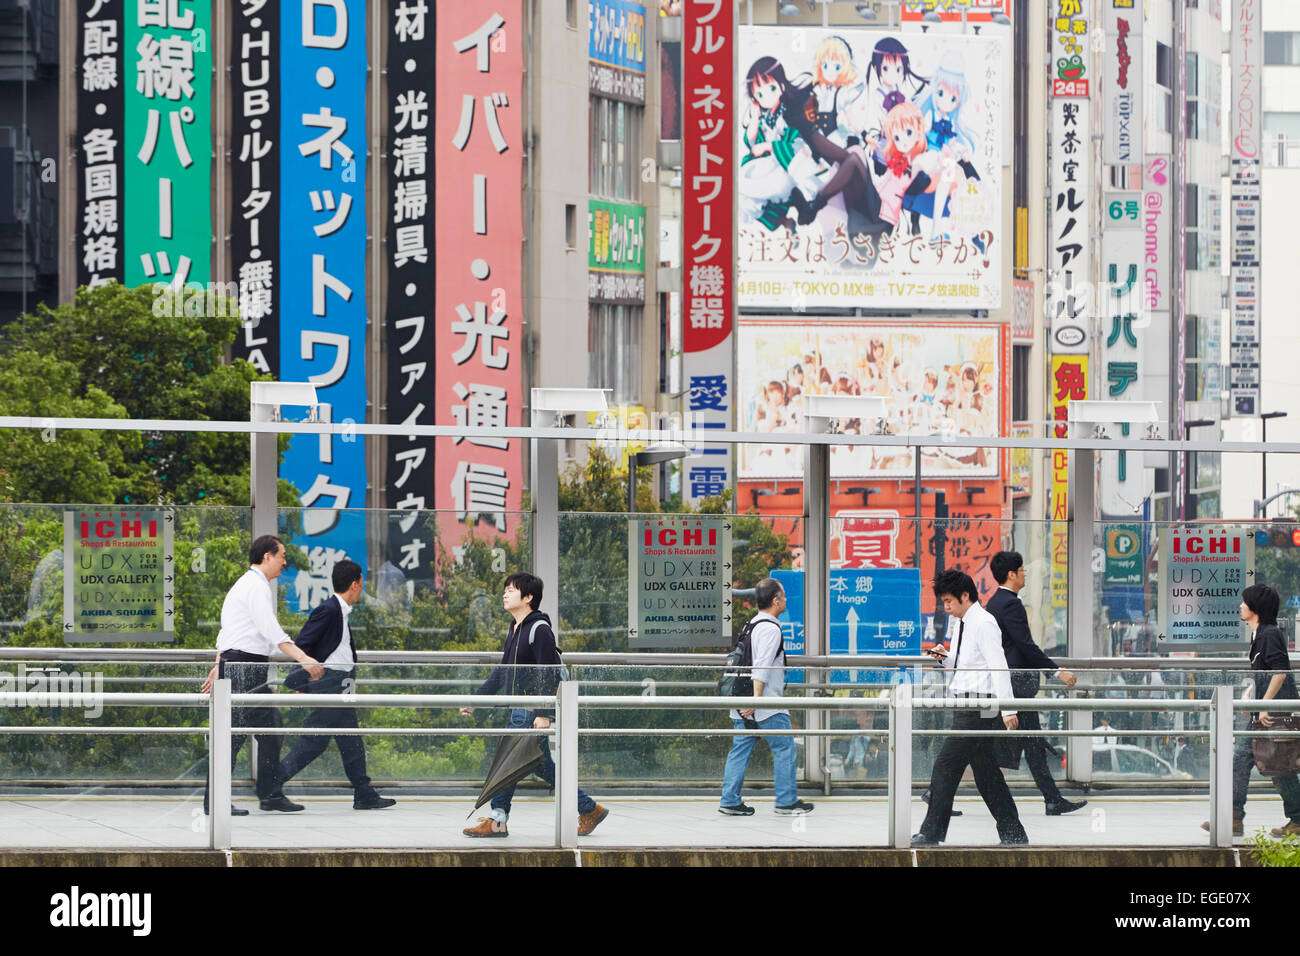 La gente a piedi nella parte anteriore dei pannelli pubblicitari, Akiharbara, Tokyo, Giappone Foto Stock